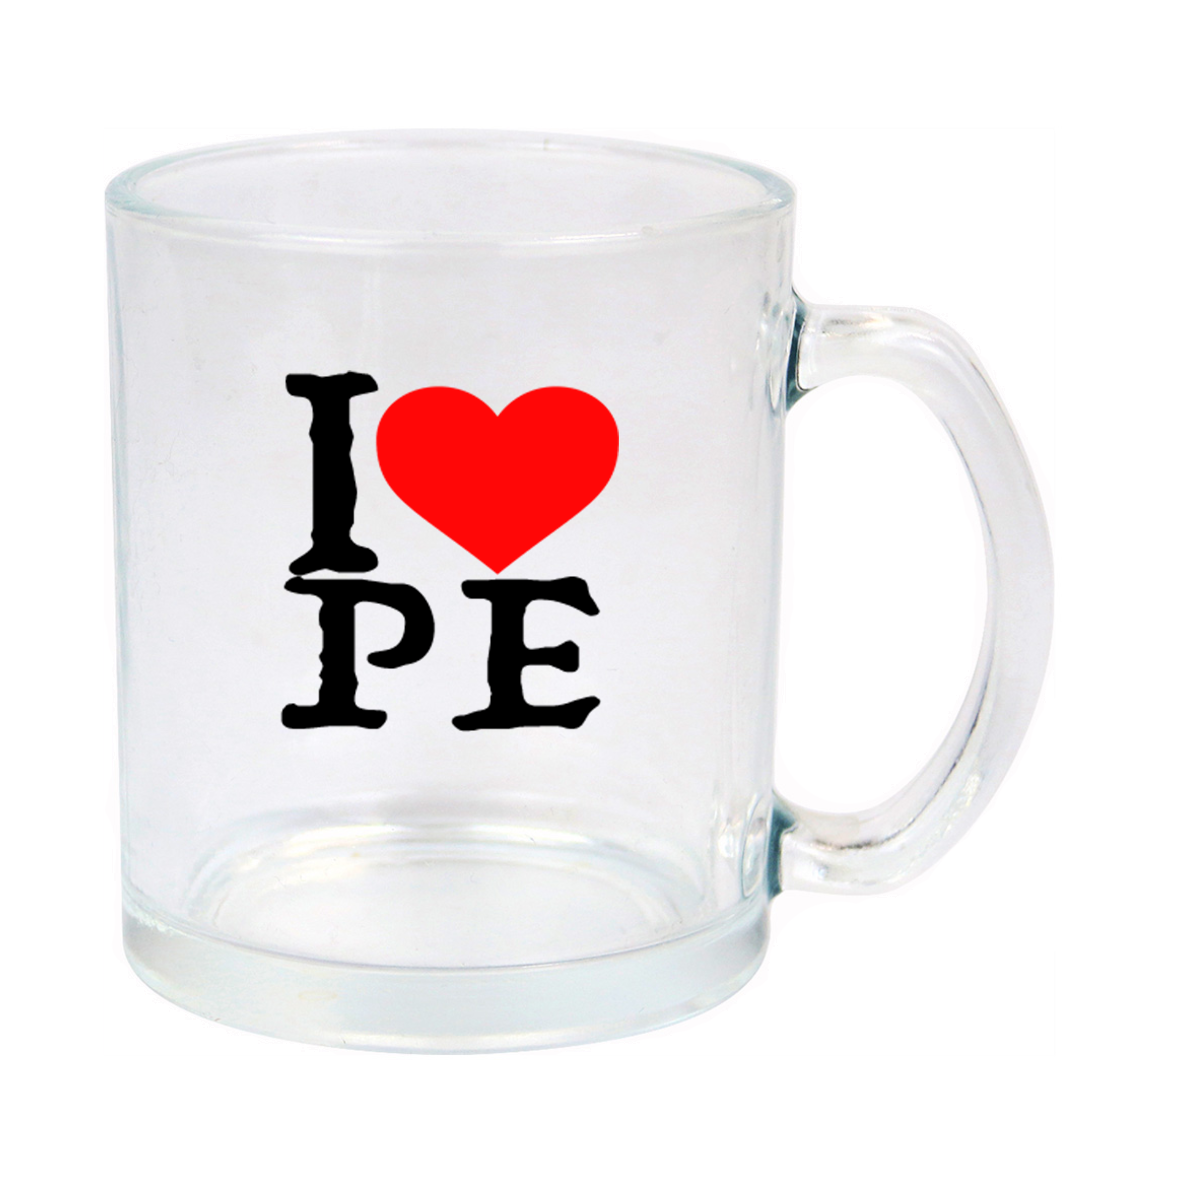 I Love Peru Glass Mug 11oz